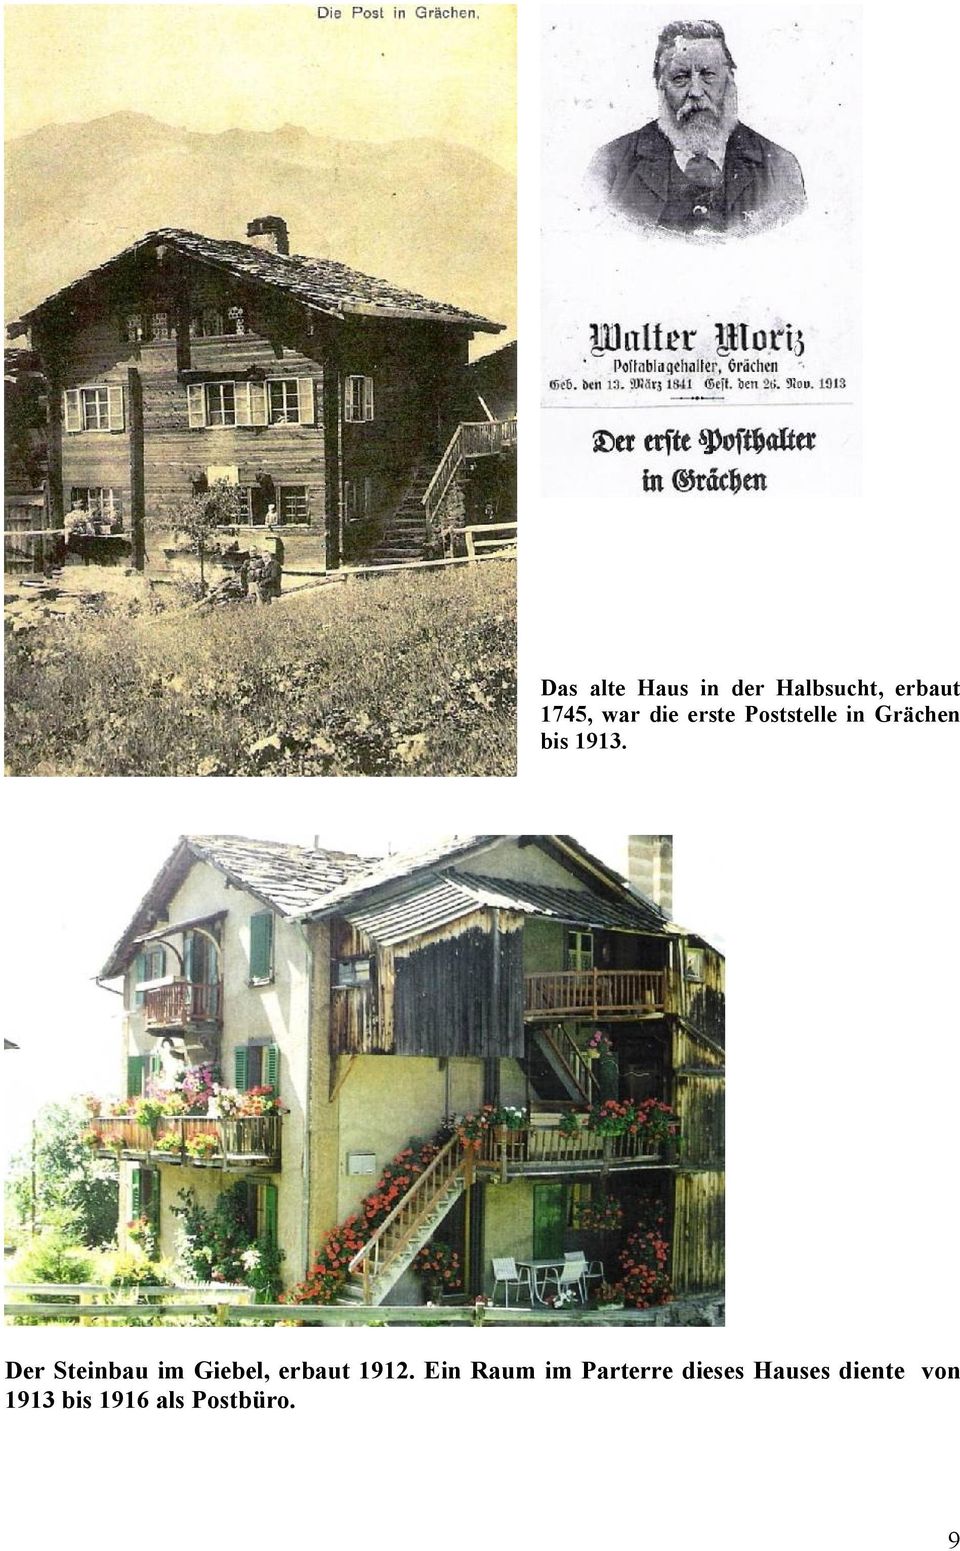 Der Steinbau im Giebel, erbaut 1912.